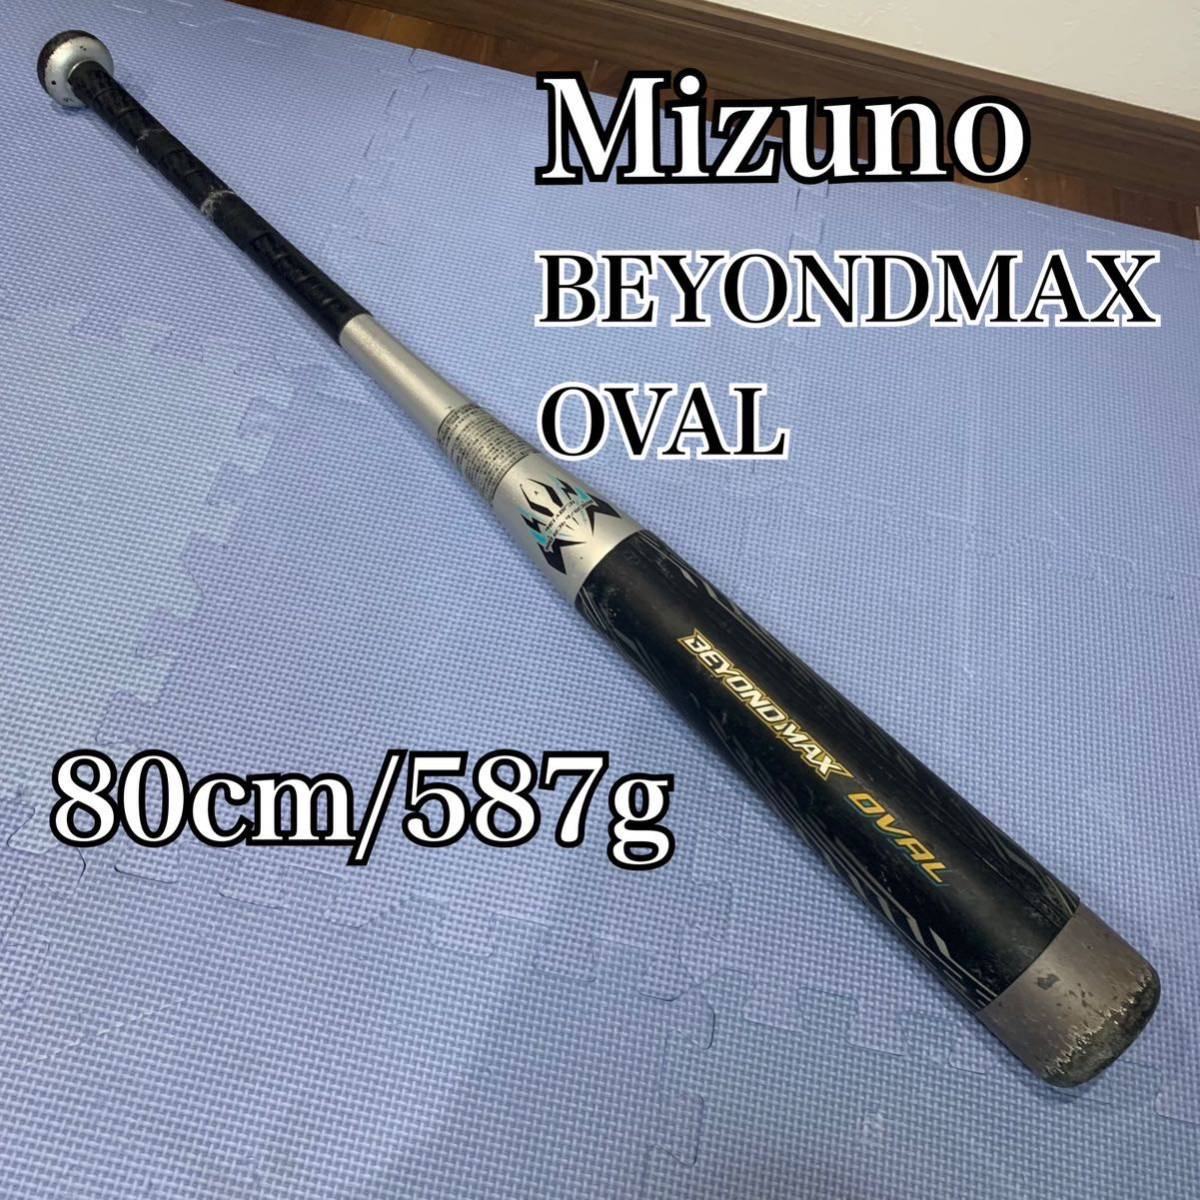 【送料無料】ミズノ BEYONDMAX OVAL ビヨンドマックス オーバル 少年軟式野球用 バット 80cm 587g 直径6.9cm_画像1